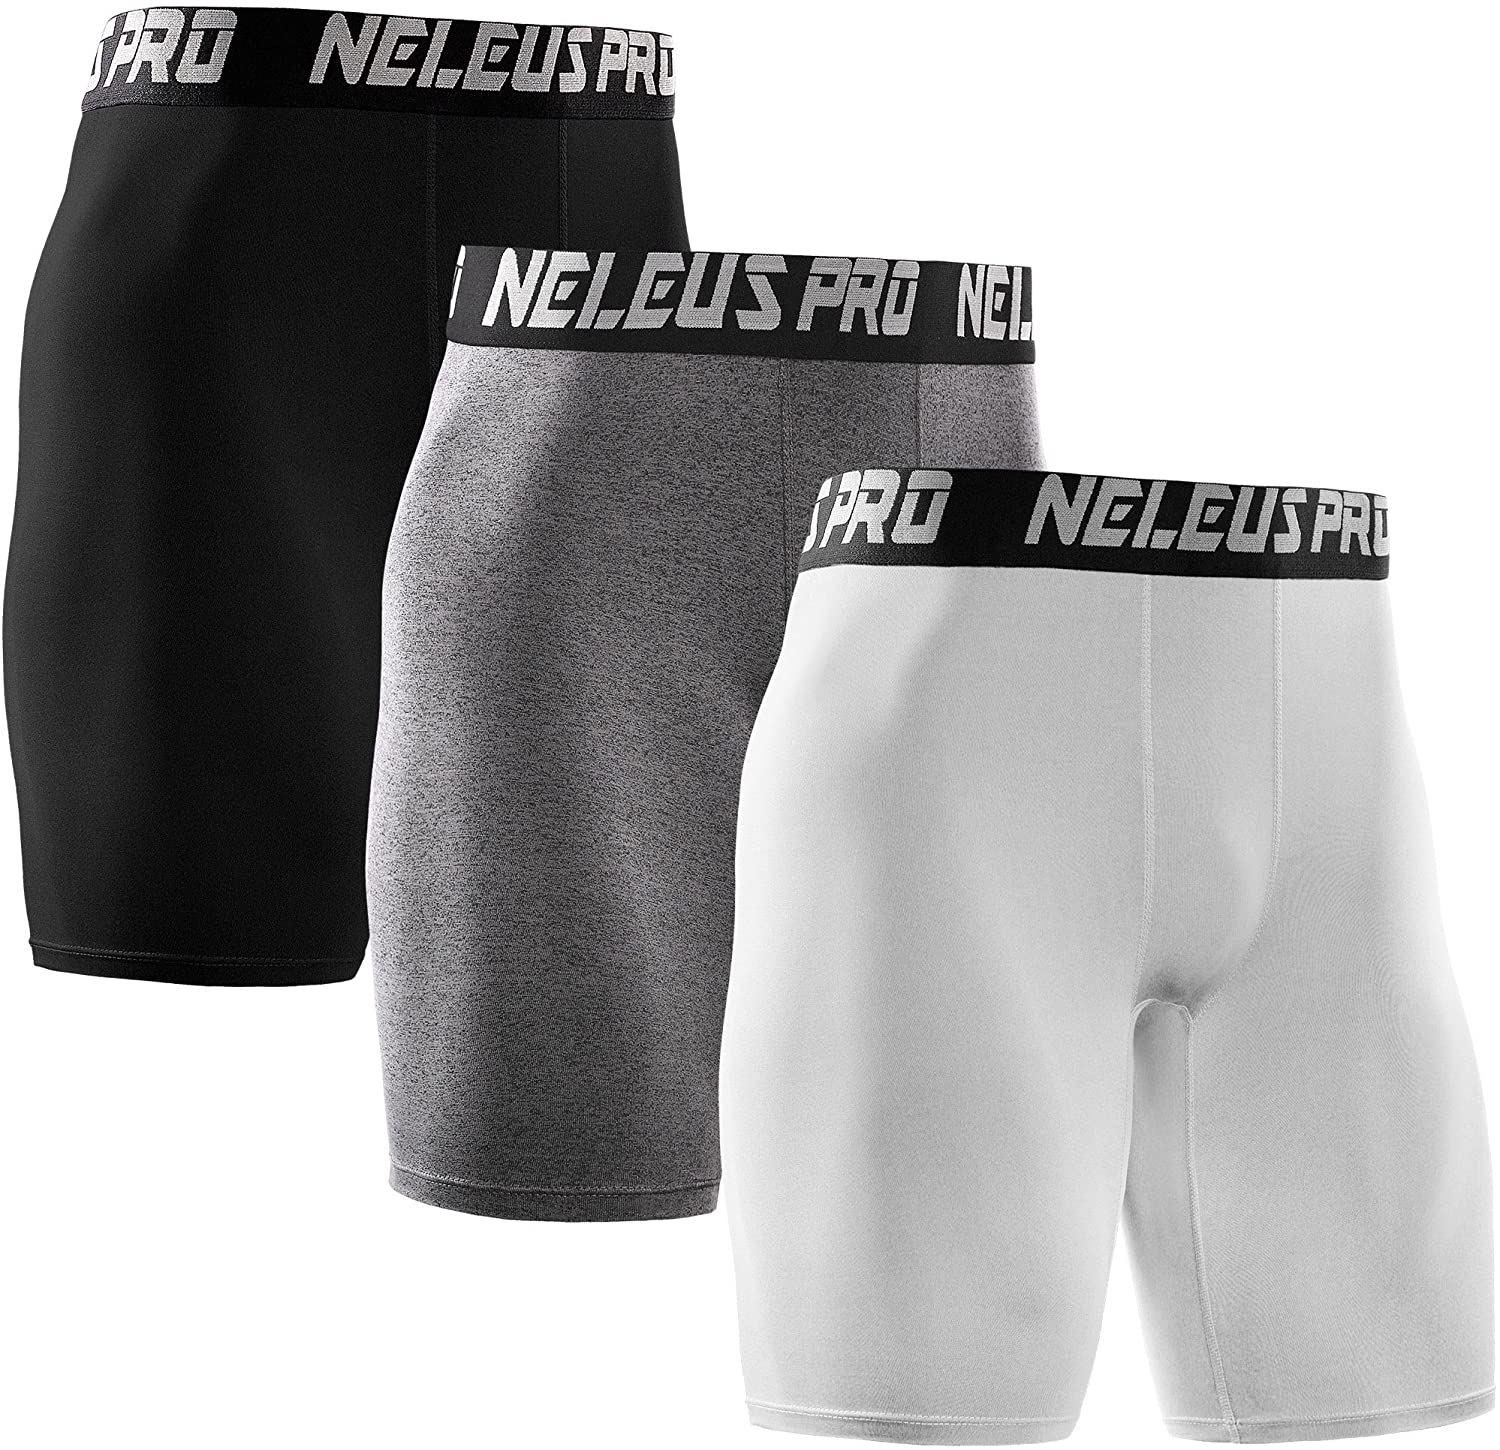 Neleus Men's 3 Pack Compression Shorts 